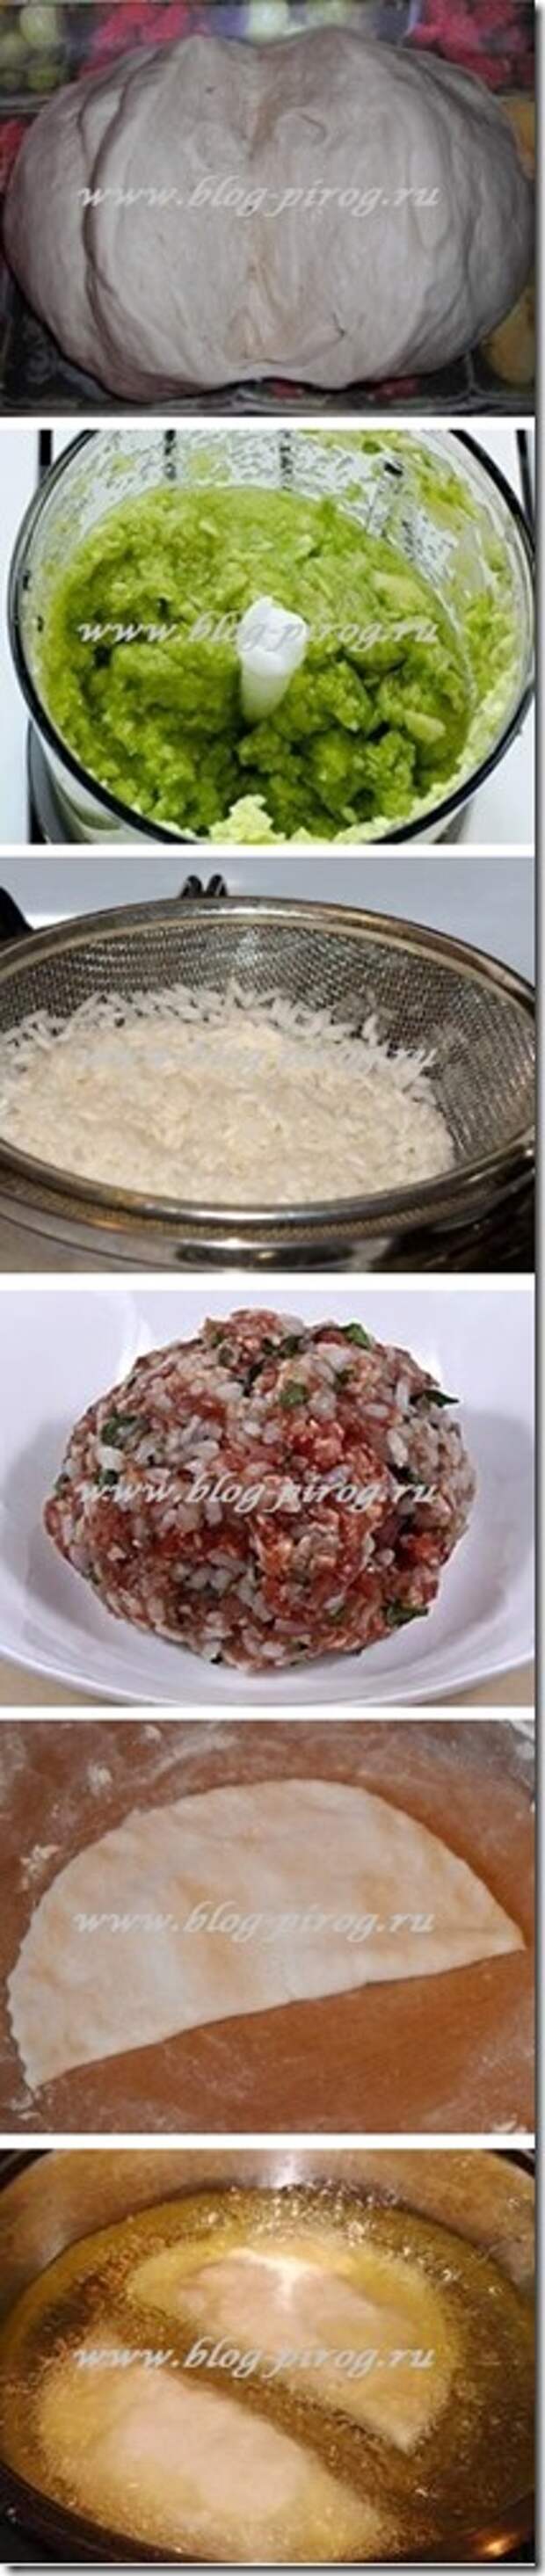 рецепт чебуреков с мясом, чебуреки рецепт теста с фото, как готовить чебуреки, рецепт чебуреков на воде